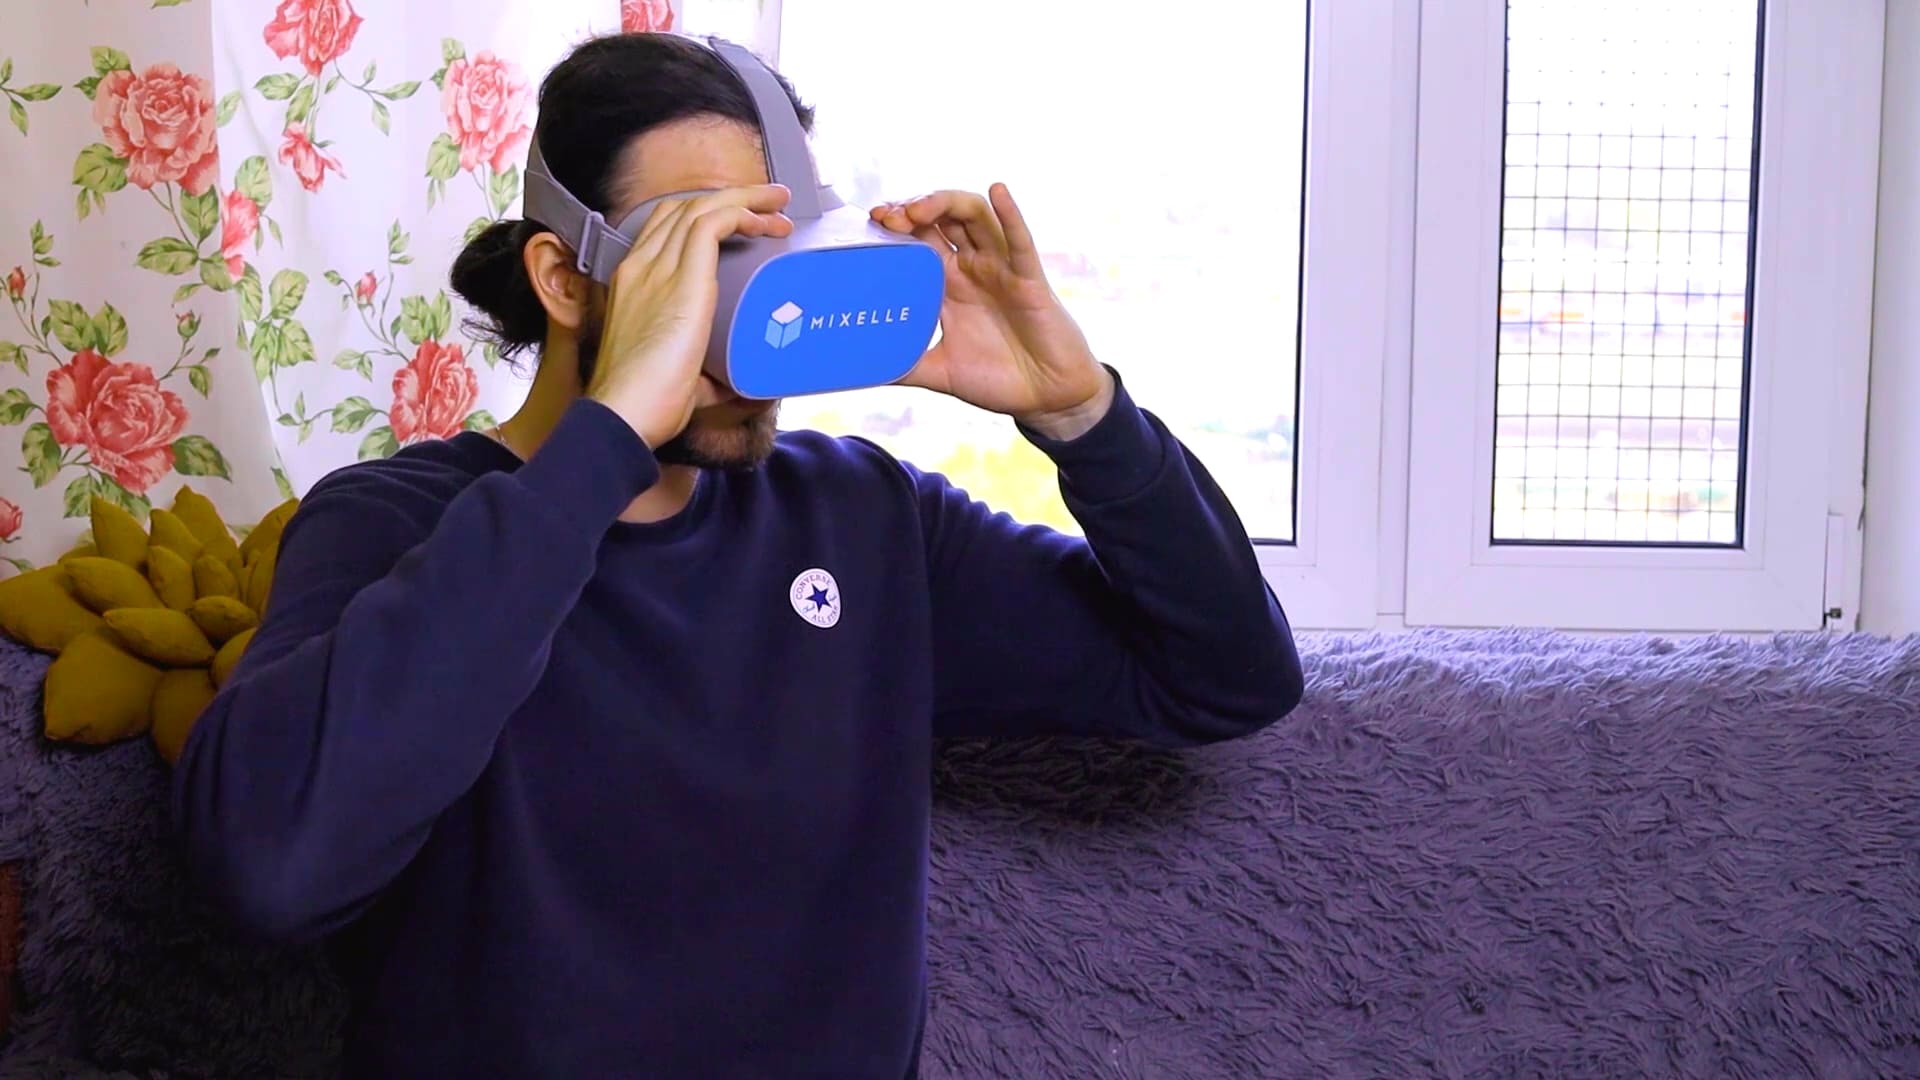 Аренда шлема виртуальной реальности Oculus Go по России, в Москве и МО на выездное мепроприятие